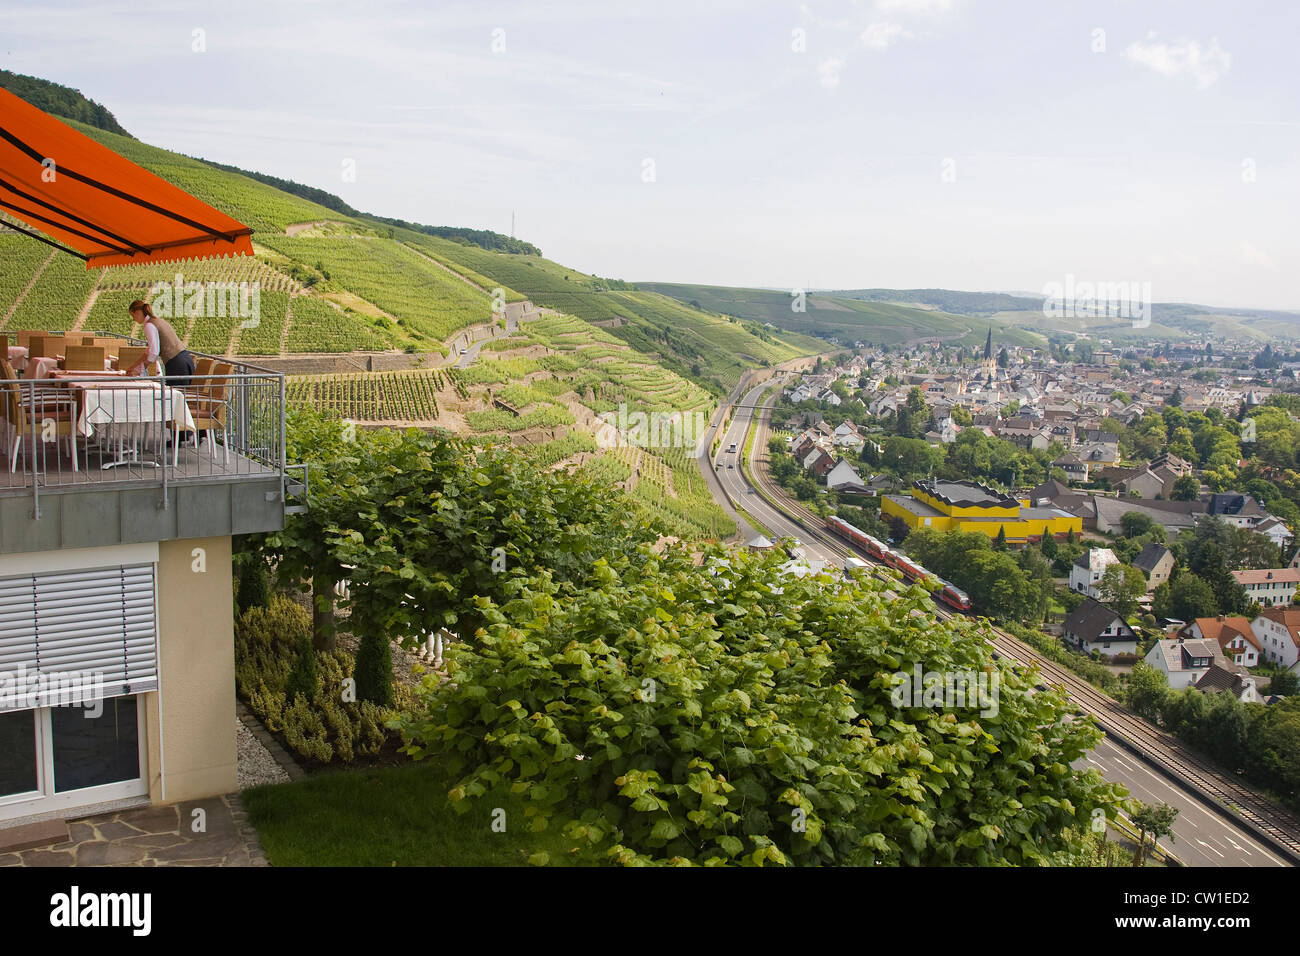 L'Europe, Allemagne, Rhénanie, domaine de Bonn, Ahrweiler, vignes, sentier du vin, vue panoramique Banque D'Images